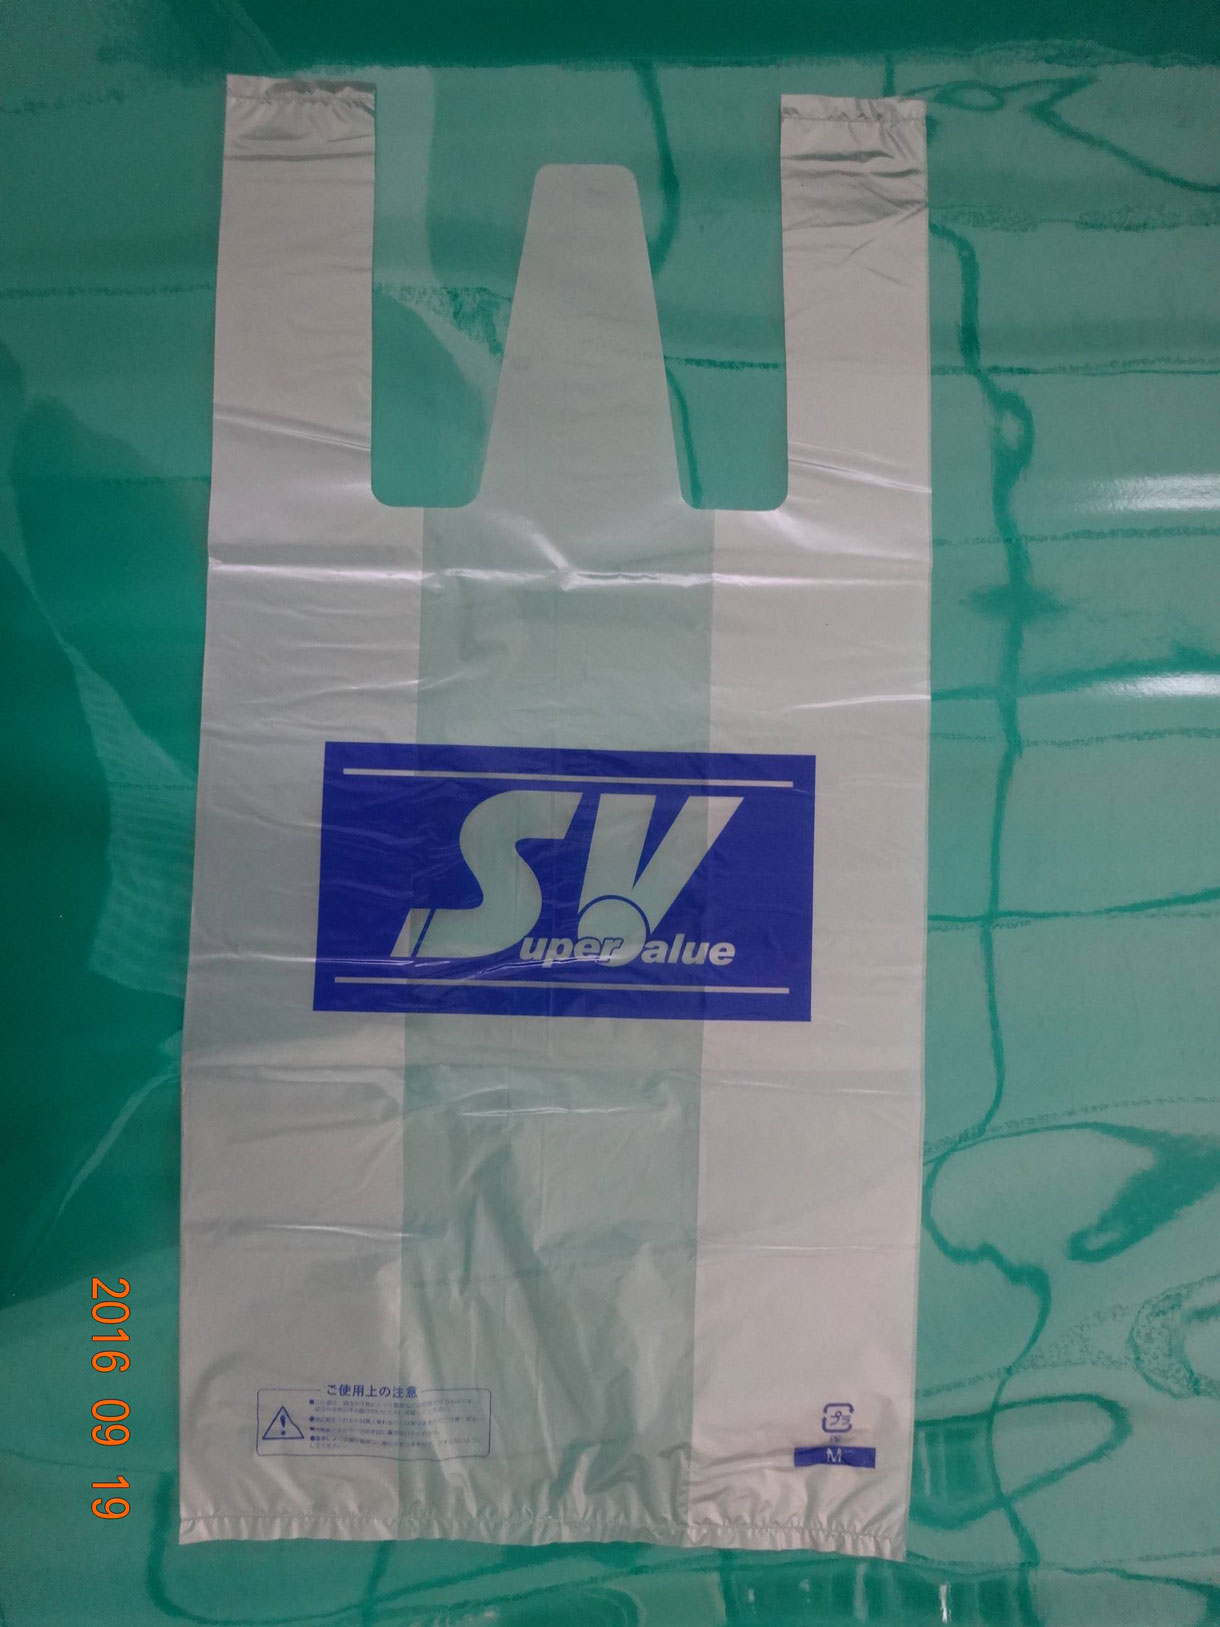 江苏多多塑胶工业有限公司-中国国际包装展-中国包装容器展